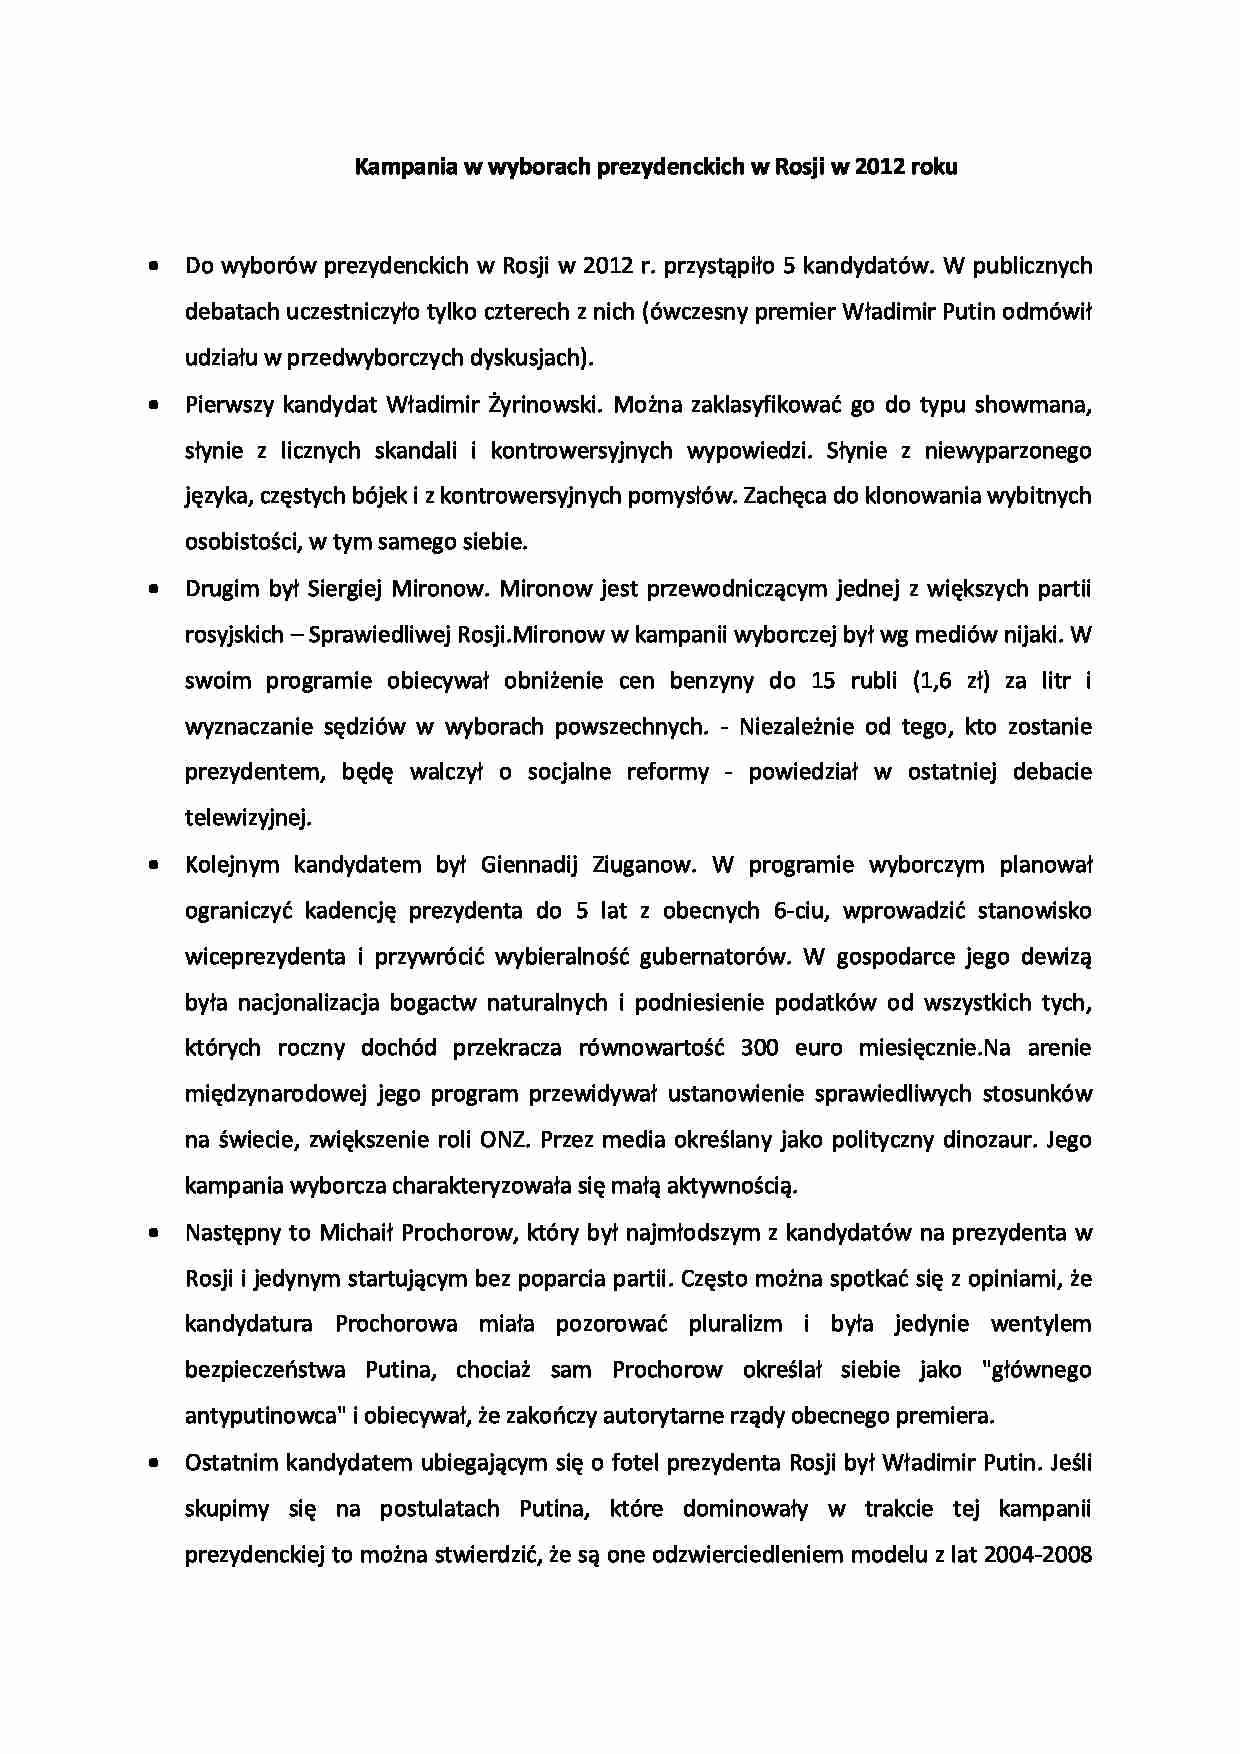 Sprawozdanie z kampanii w Rosji - strona 1